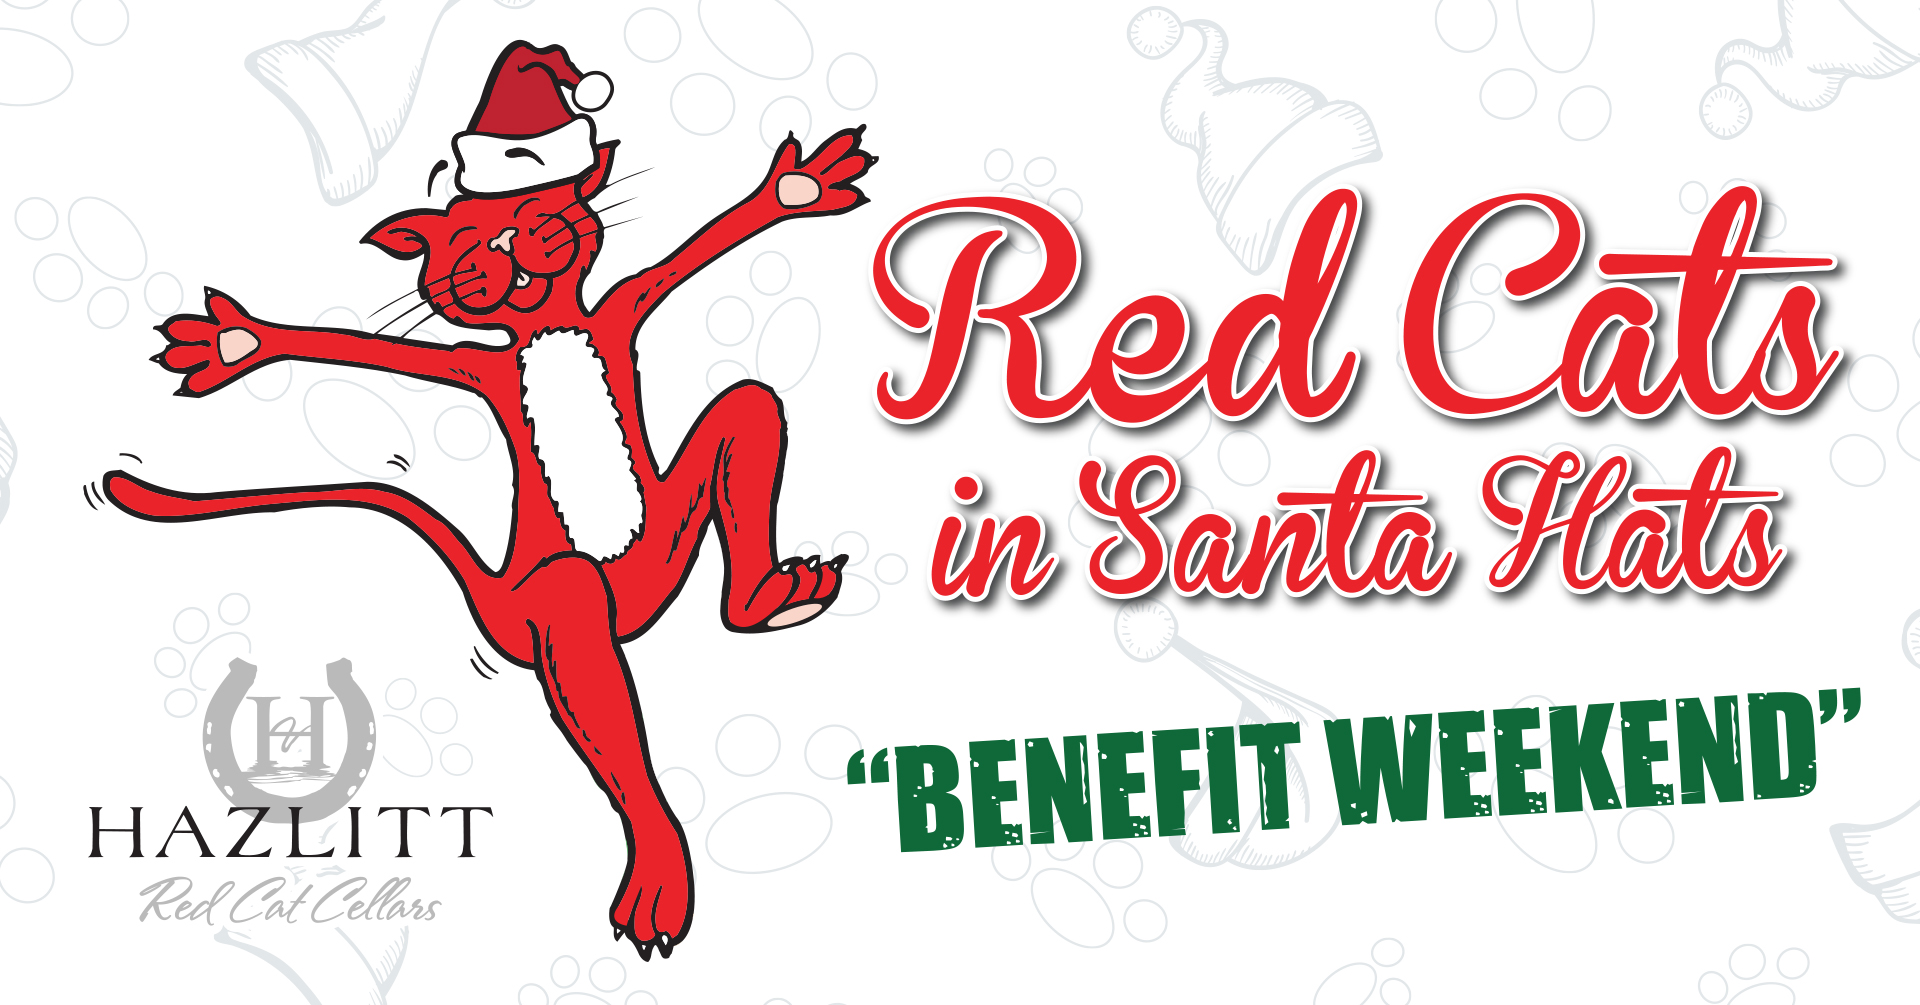 Red Cats in Santa Hats Benefit Weekend. Dancing Red Cat wearing Santa Hat. Hazlitt Red Cat Cellars.